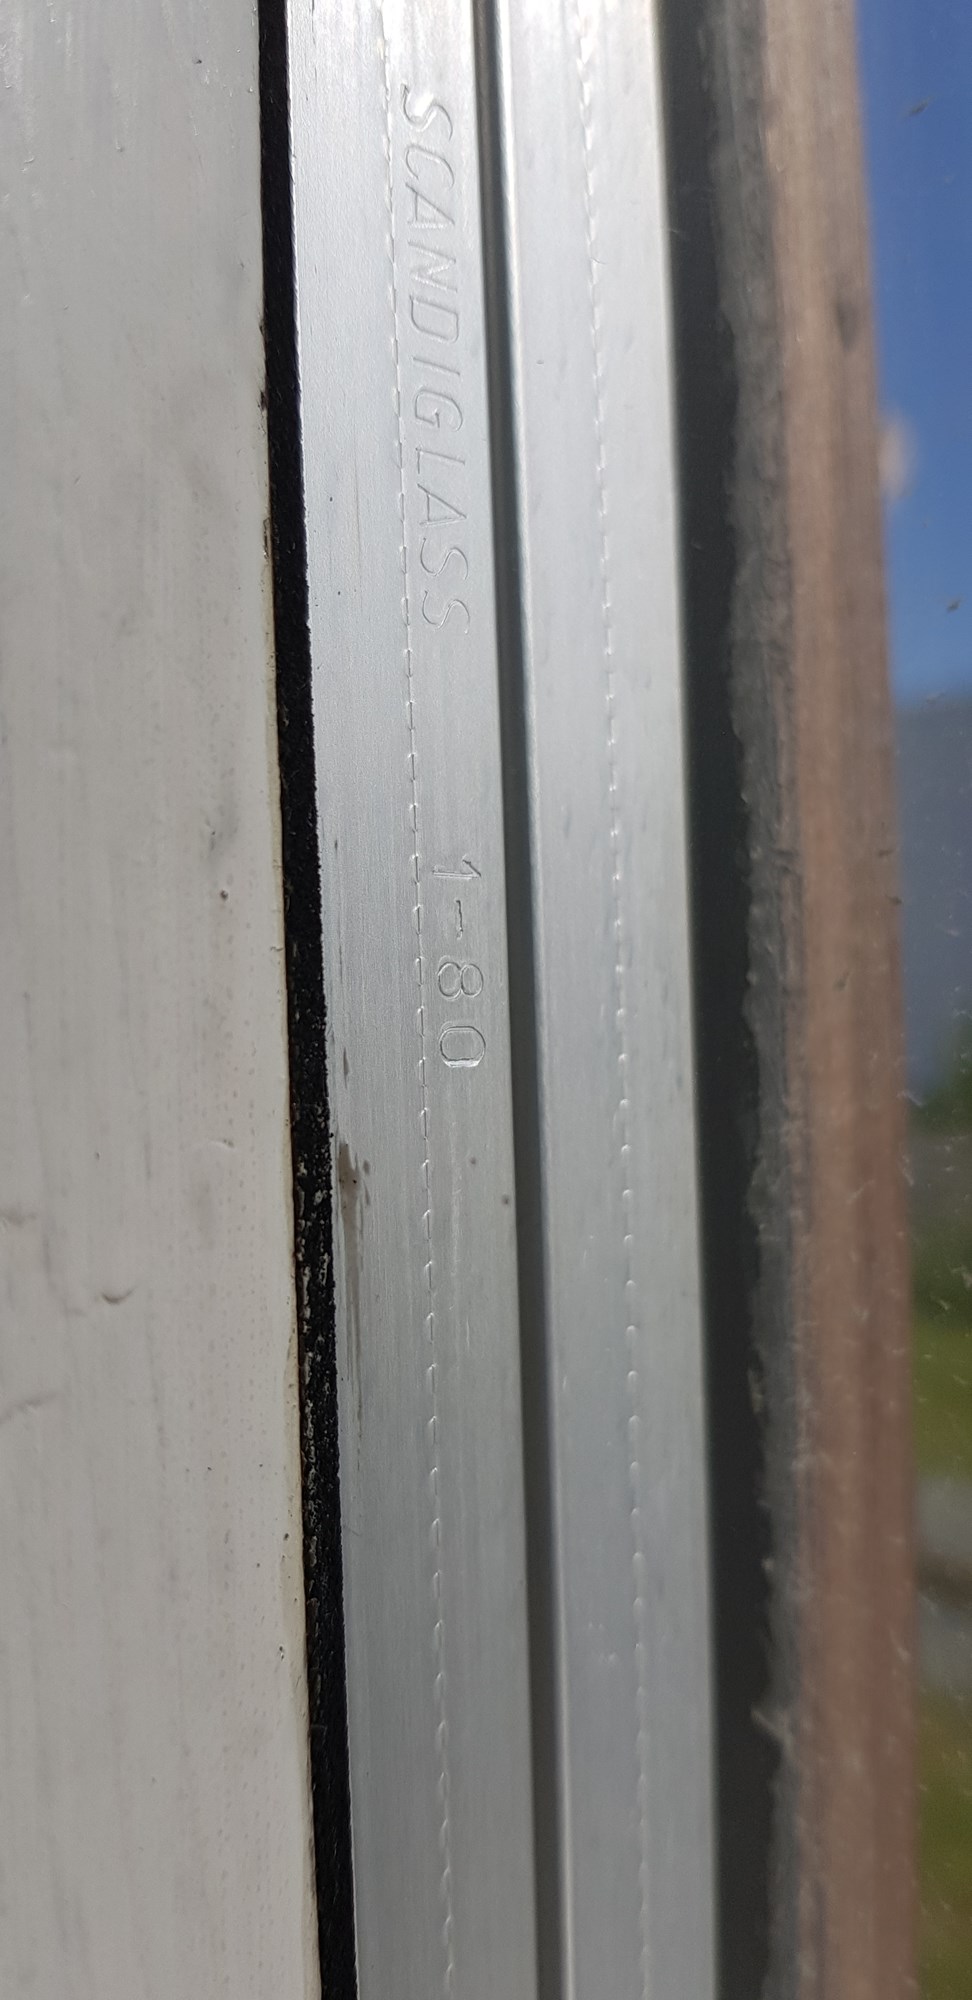 Er dette vinduskitt med asbest i? - 20190731_095221.jpg - Emmylou91